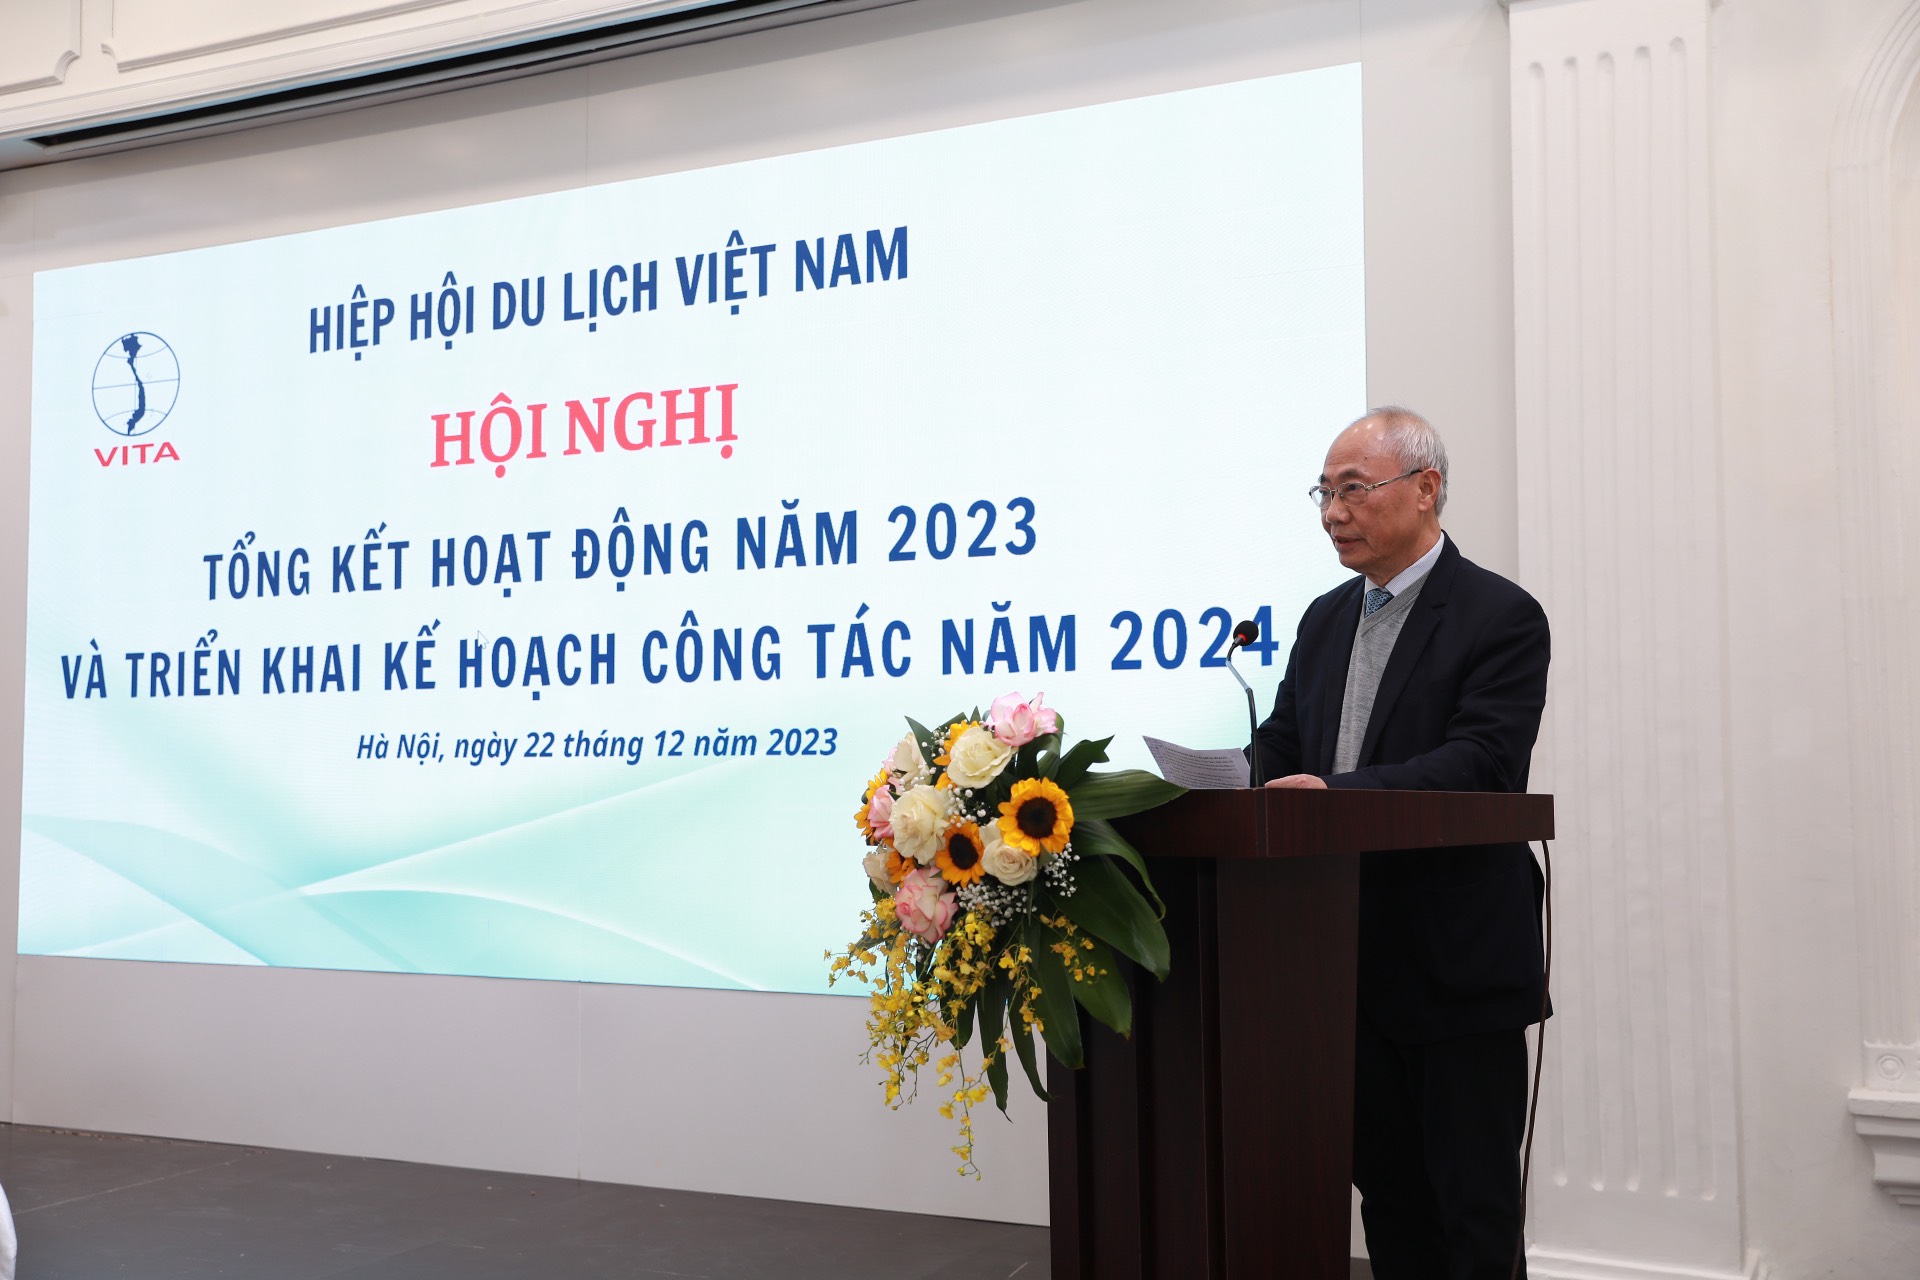  Ông Vũ Thế Bình, Chủ tịch Hiệp hội Du lịch Việt Nam phát biểu khai mạc Hội nghị